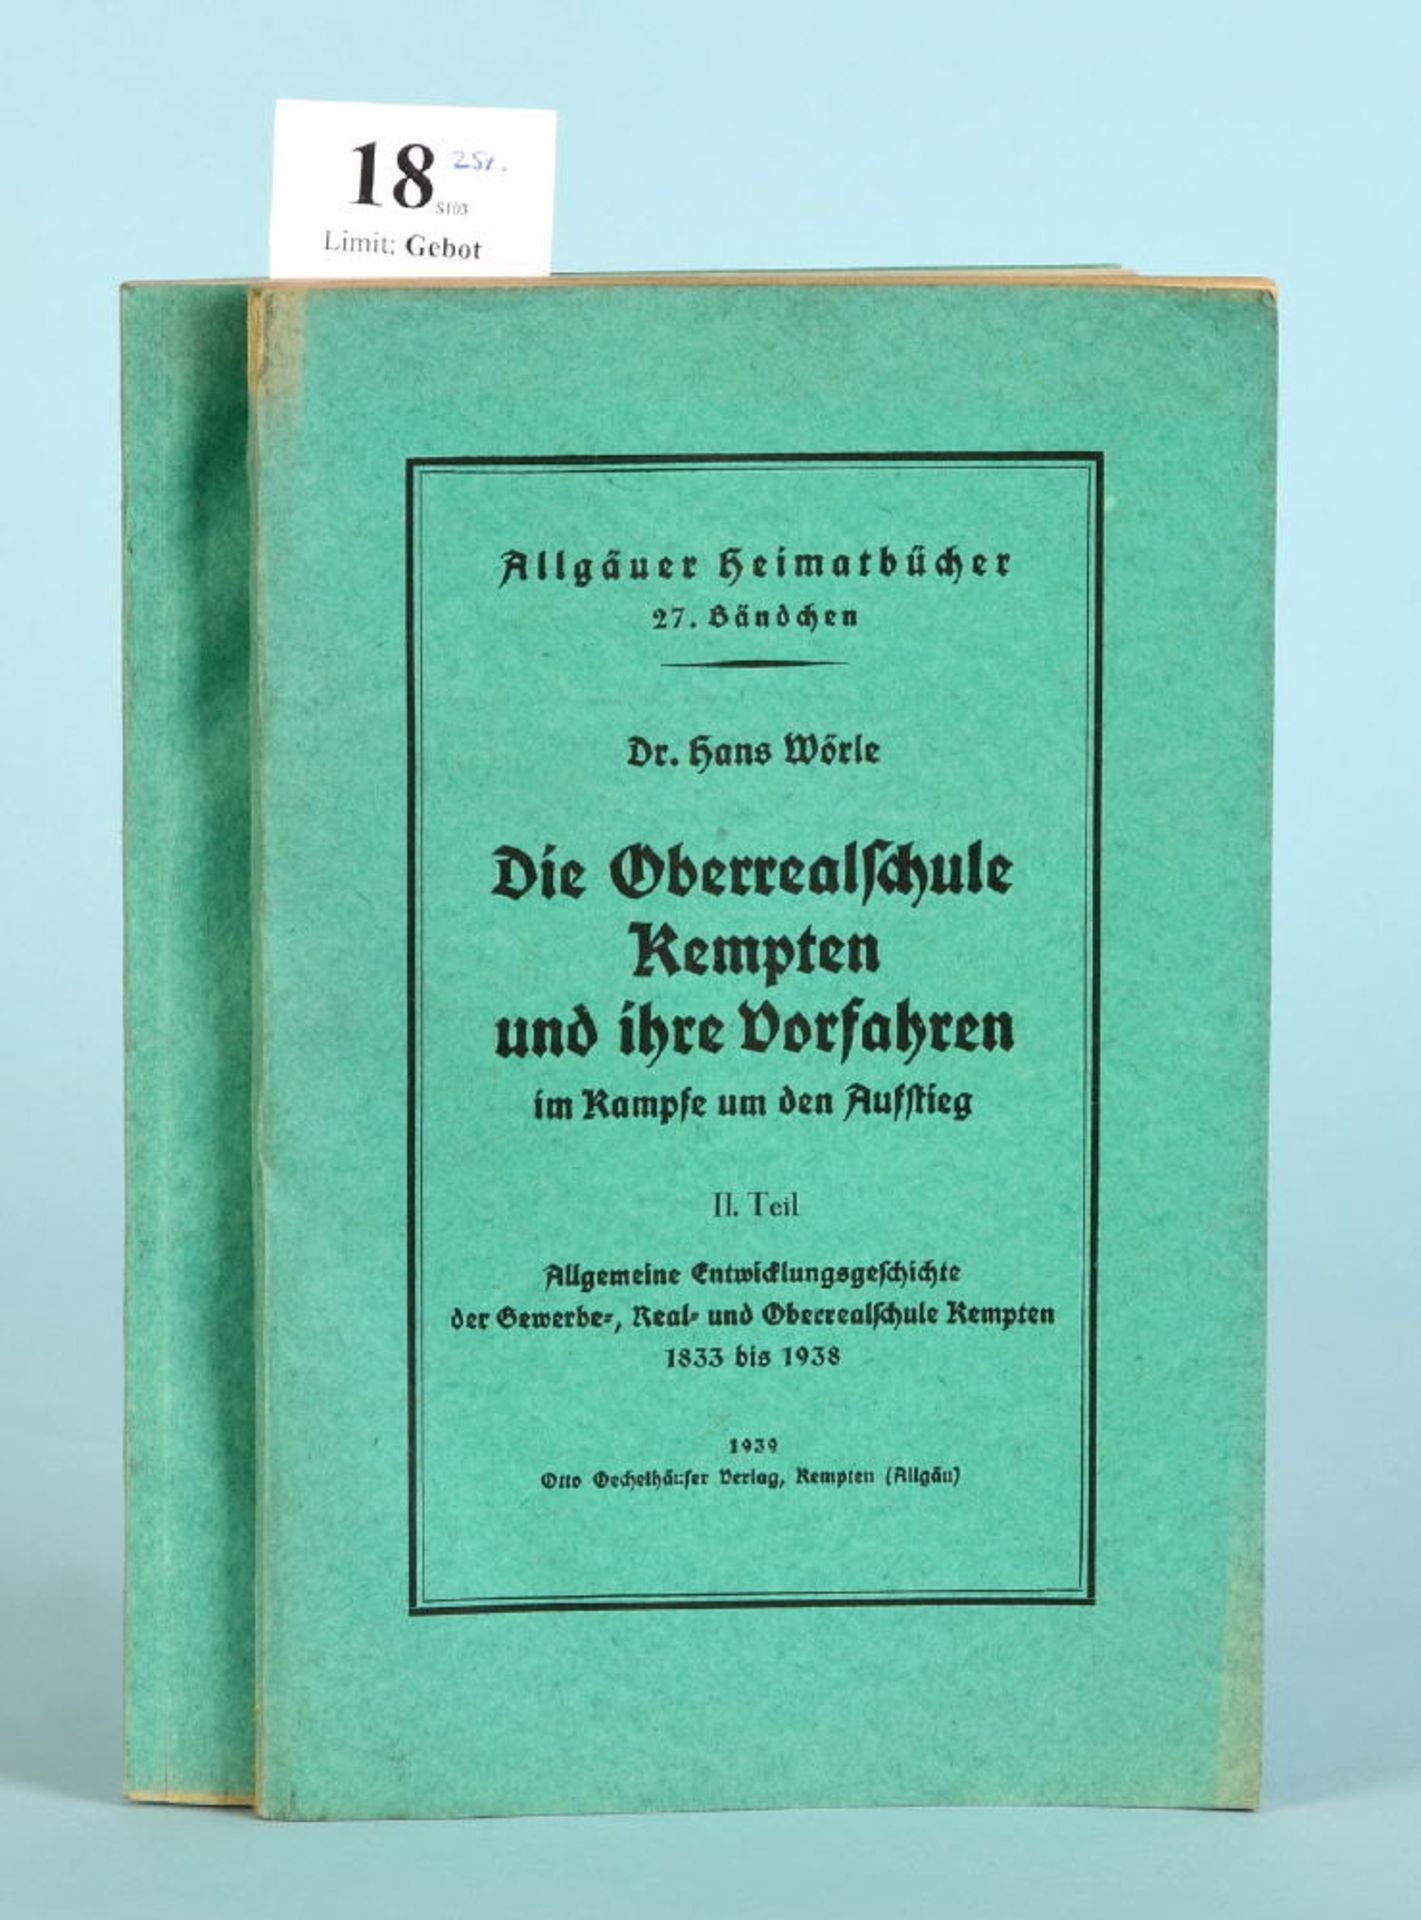 Wörle, Hans "Die Oberrealschule Kempten und ihre...""...Vorfahren im Kampfe um den Aufstieg", 2